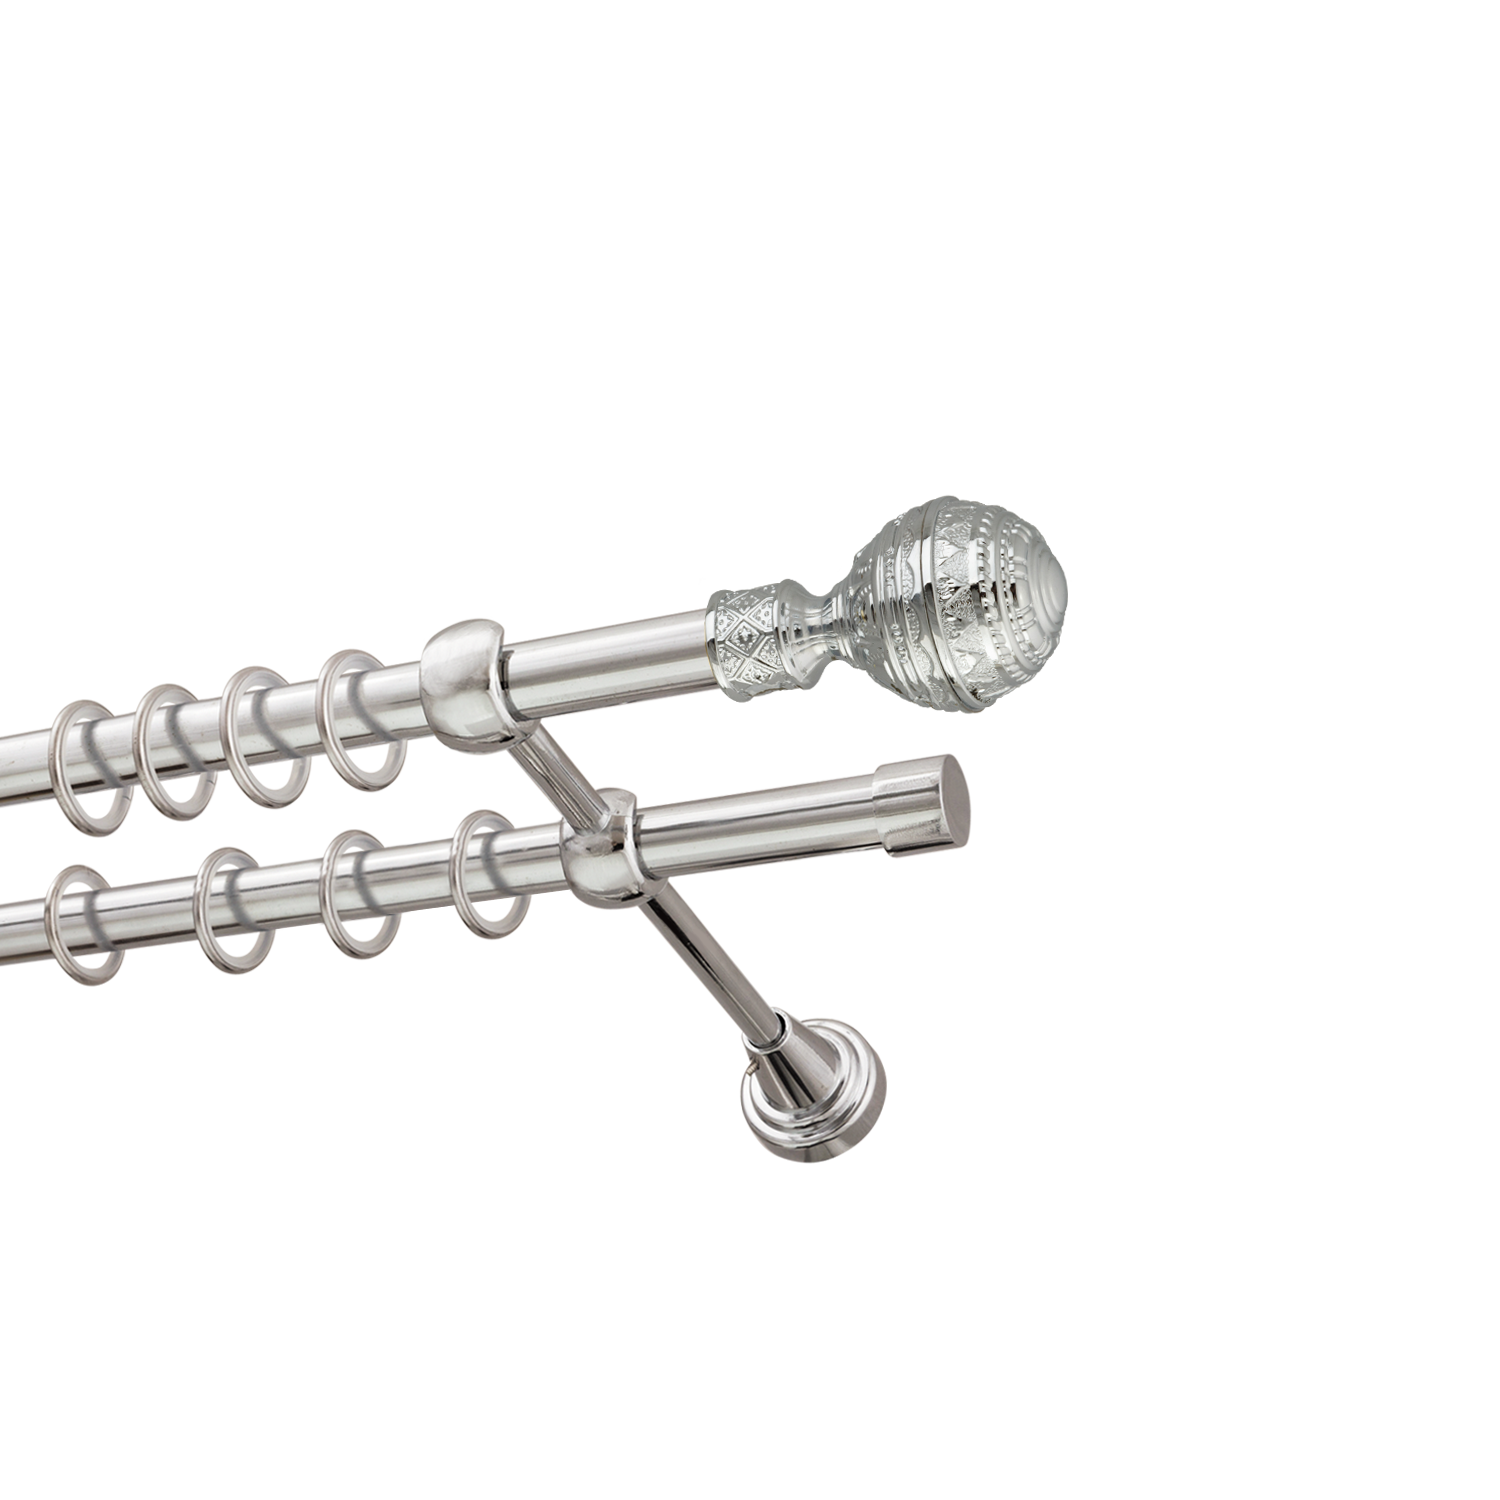 Металлический карниз для штор Роял, двухрядный 16/16 мм, серебро, гладкая штанга, длина 180 см